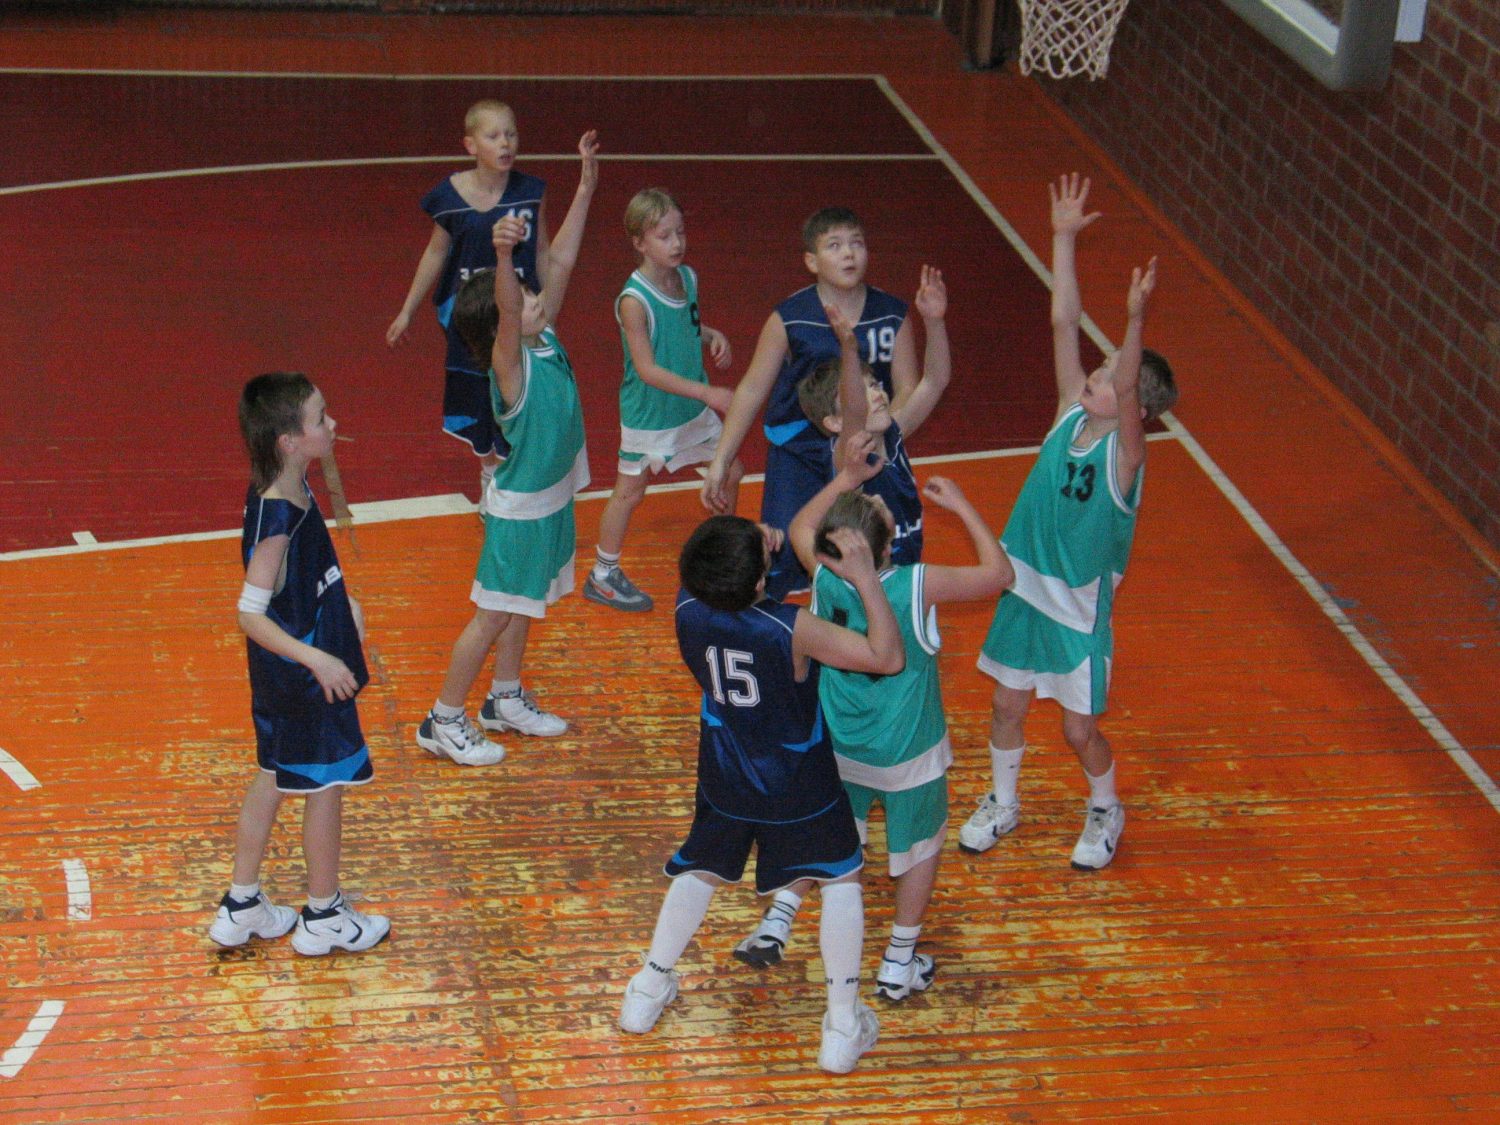 Jaunie spēlē basketbolu